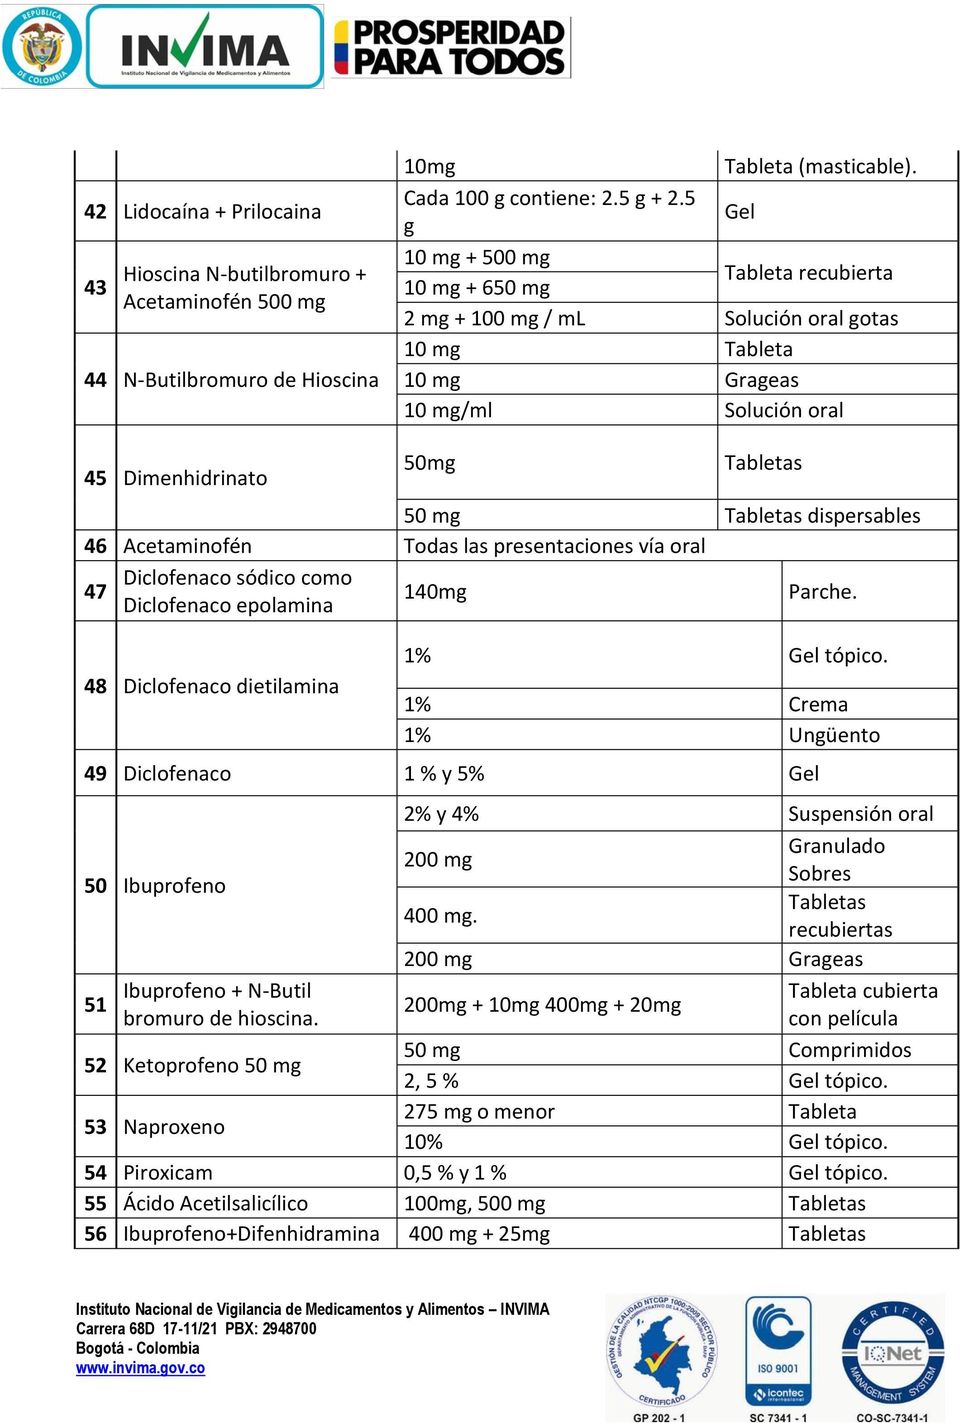 dispersables 46 Acetaminofén Todas las presentaciones vía oral Diclofenaco sódico como 47 140mg Parche. Diclofenaco epolamina 48 Diclofenaco dietilamina 1% Gel tópico.